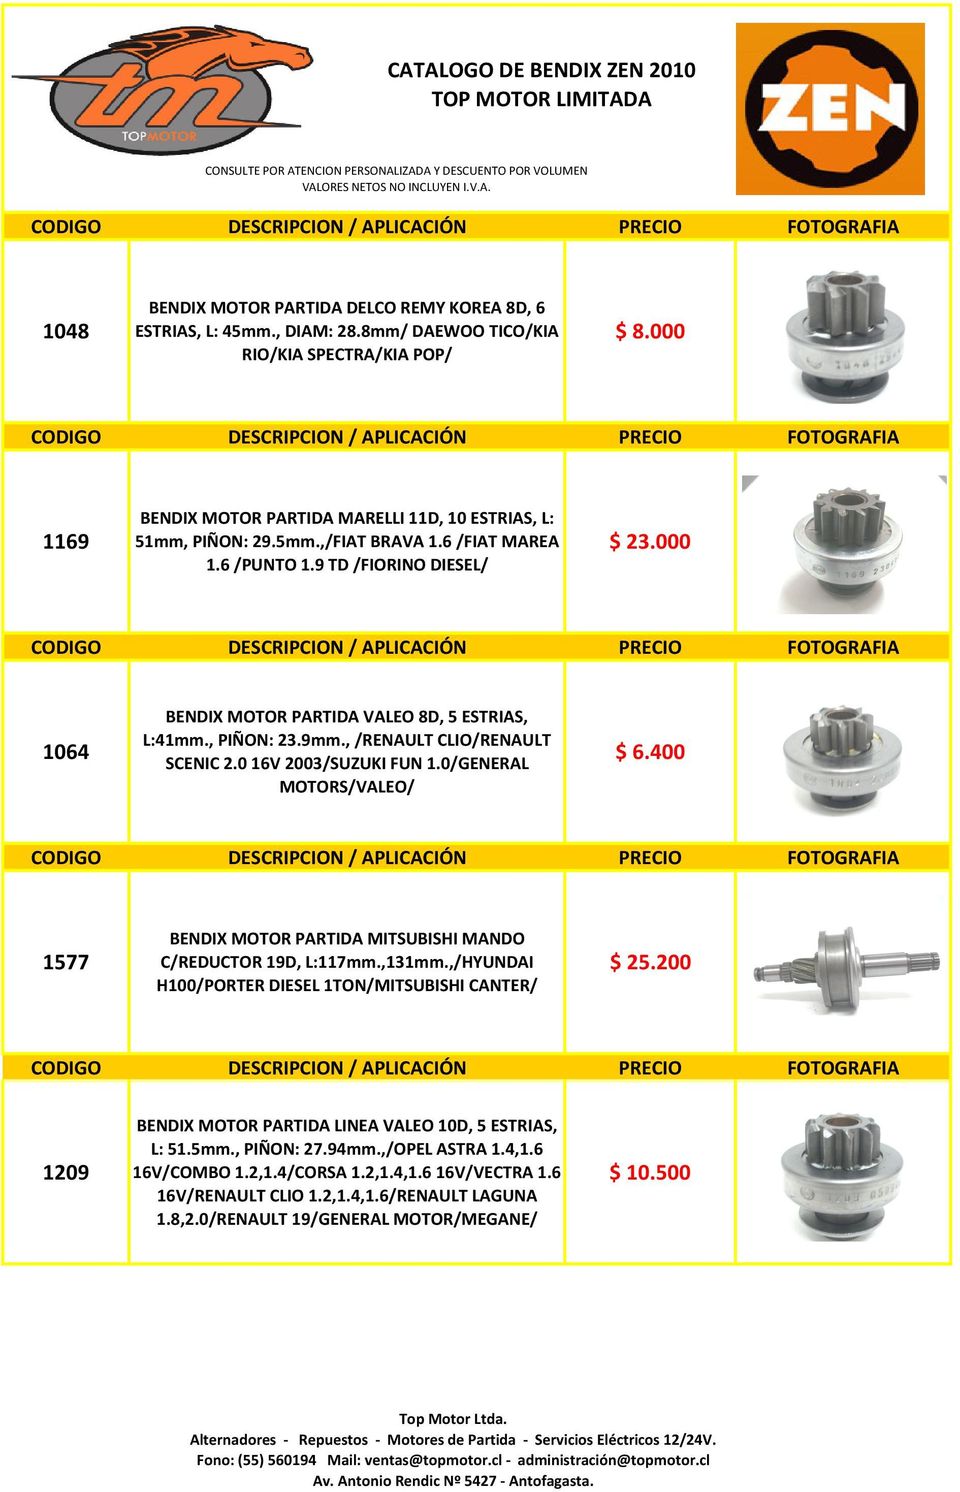 000 CODIGO DESCRIPCION / APLICACIÓN PRECIO 1064 BENDIX MOTOR PARTIDA VALEO 8D, 5 ESTRIAS, L:41mm., PIÑON: 23.9mm., /RENAULT CLIO/RENAULT SCENIC 2.0 16V 2003/SUZUKI FUN 1.0/GENERAL MOTORS/VALEO/ $ 6.